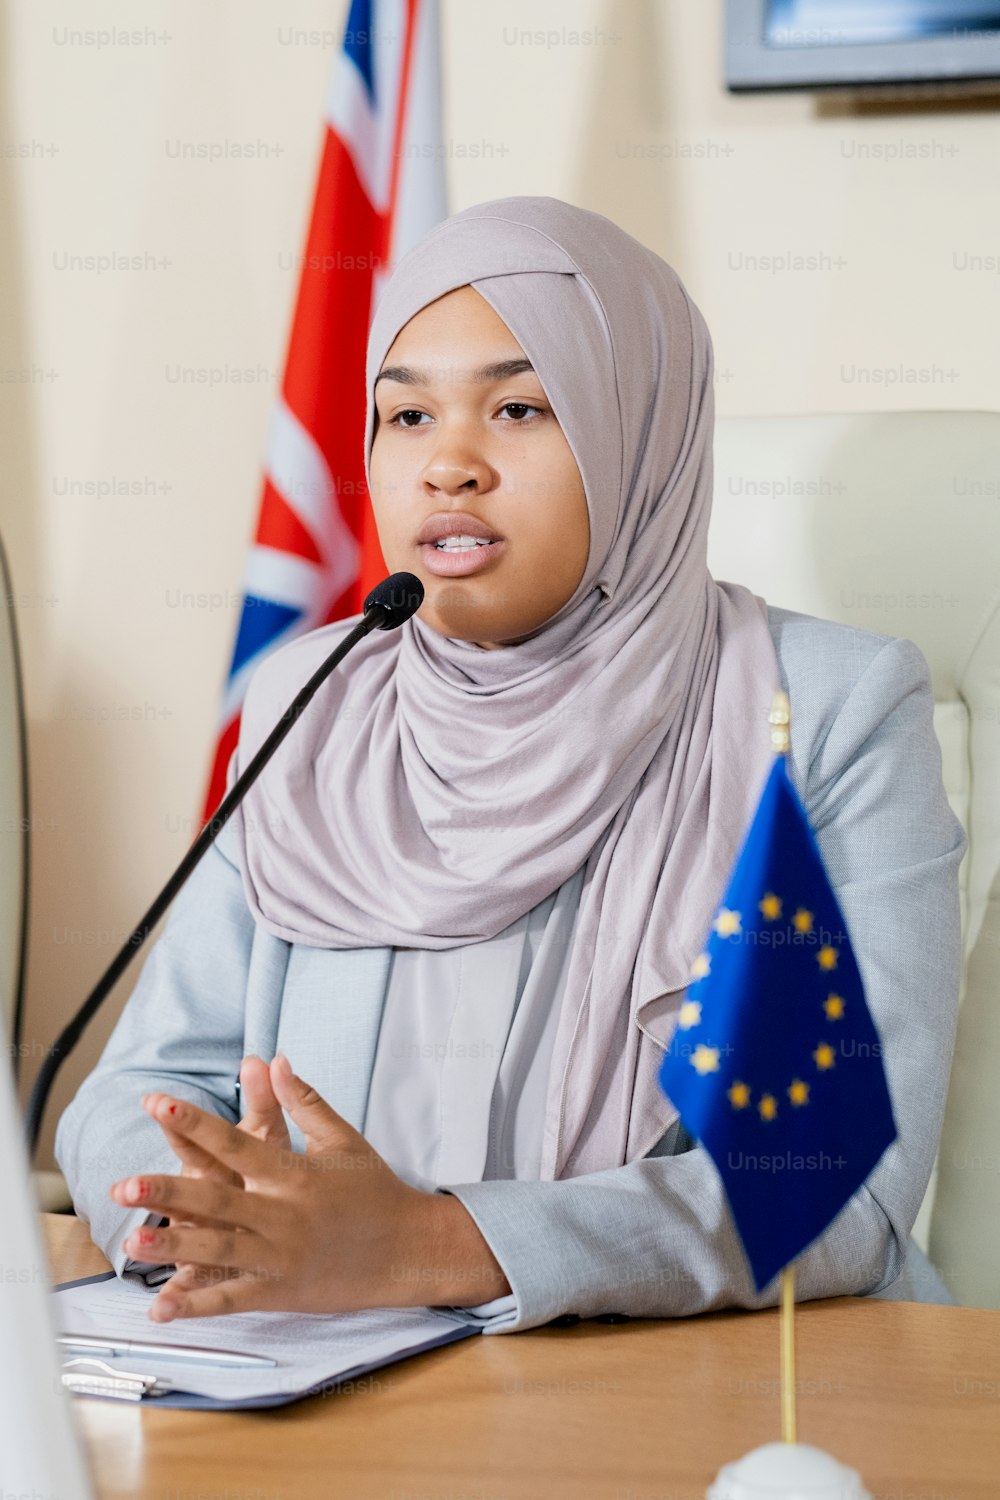 Representante musulmán confiado de la Unión Europea con hijab tocando las yemas de los dedos mientras habla por el micrófono en el congreso